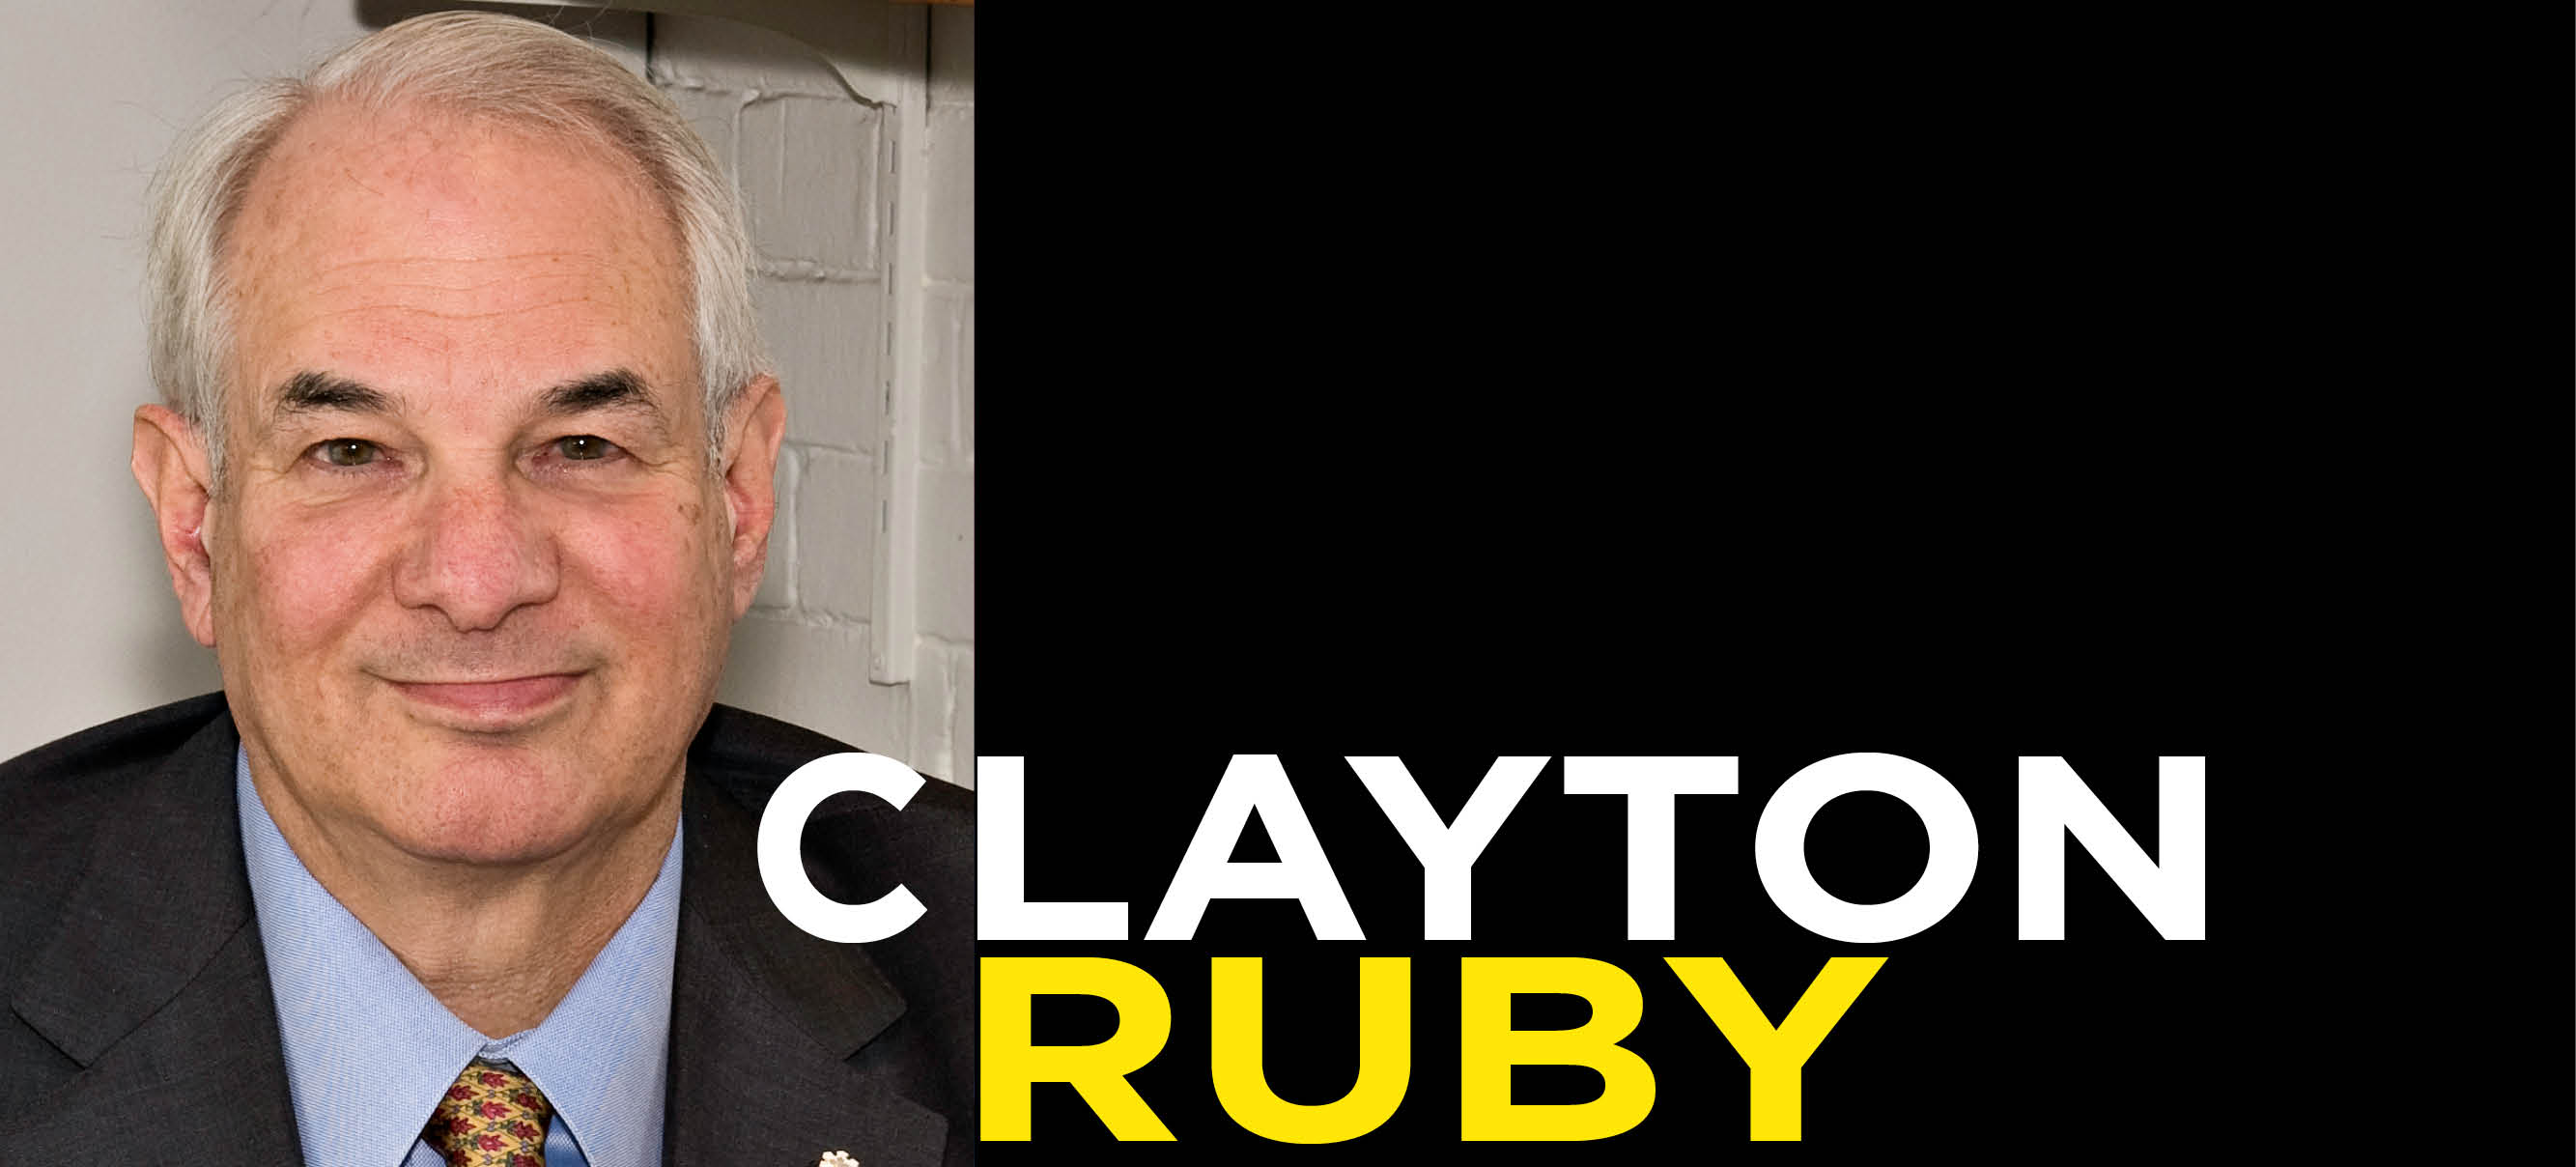 Clayton Ruby